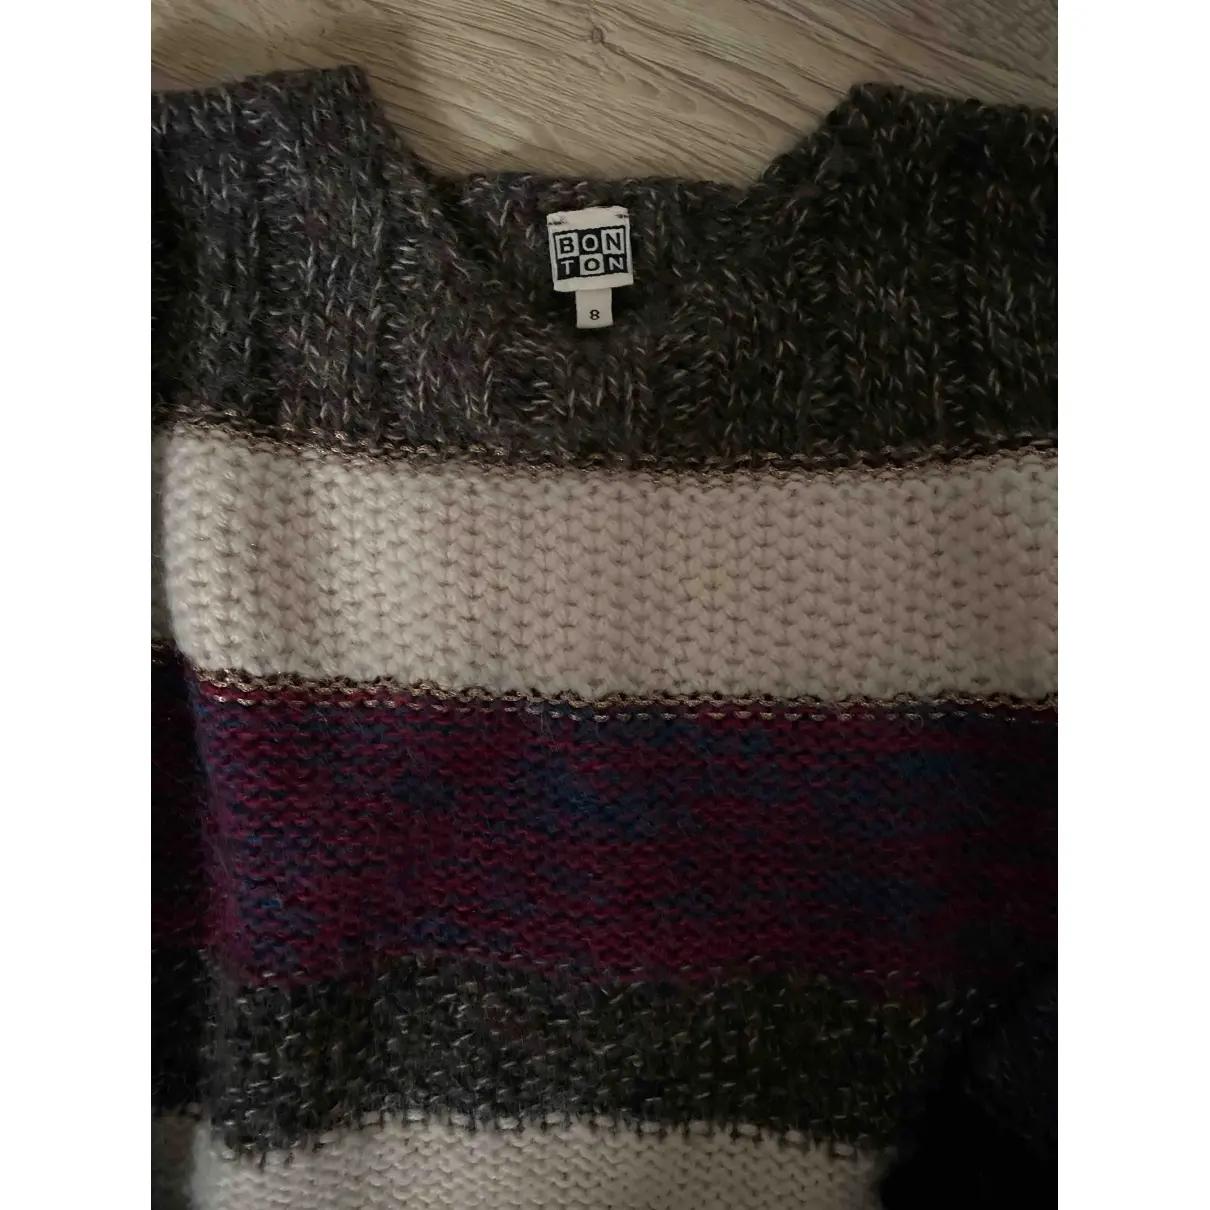 Bonton Wool sweater for sale